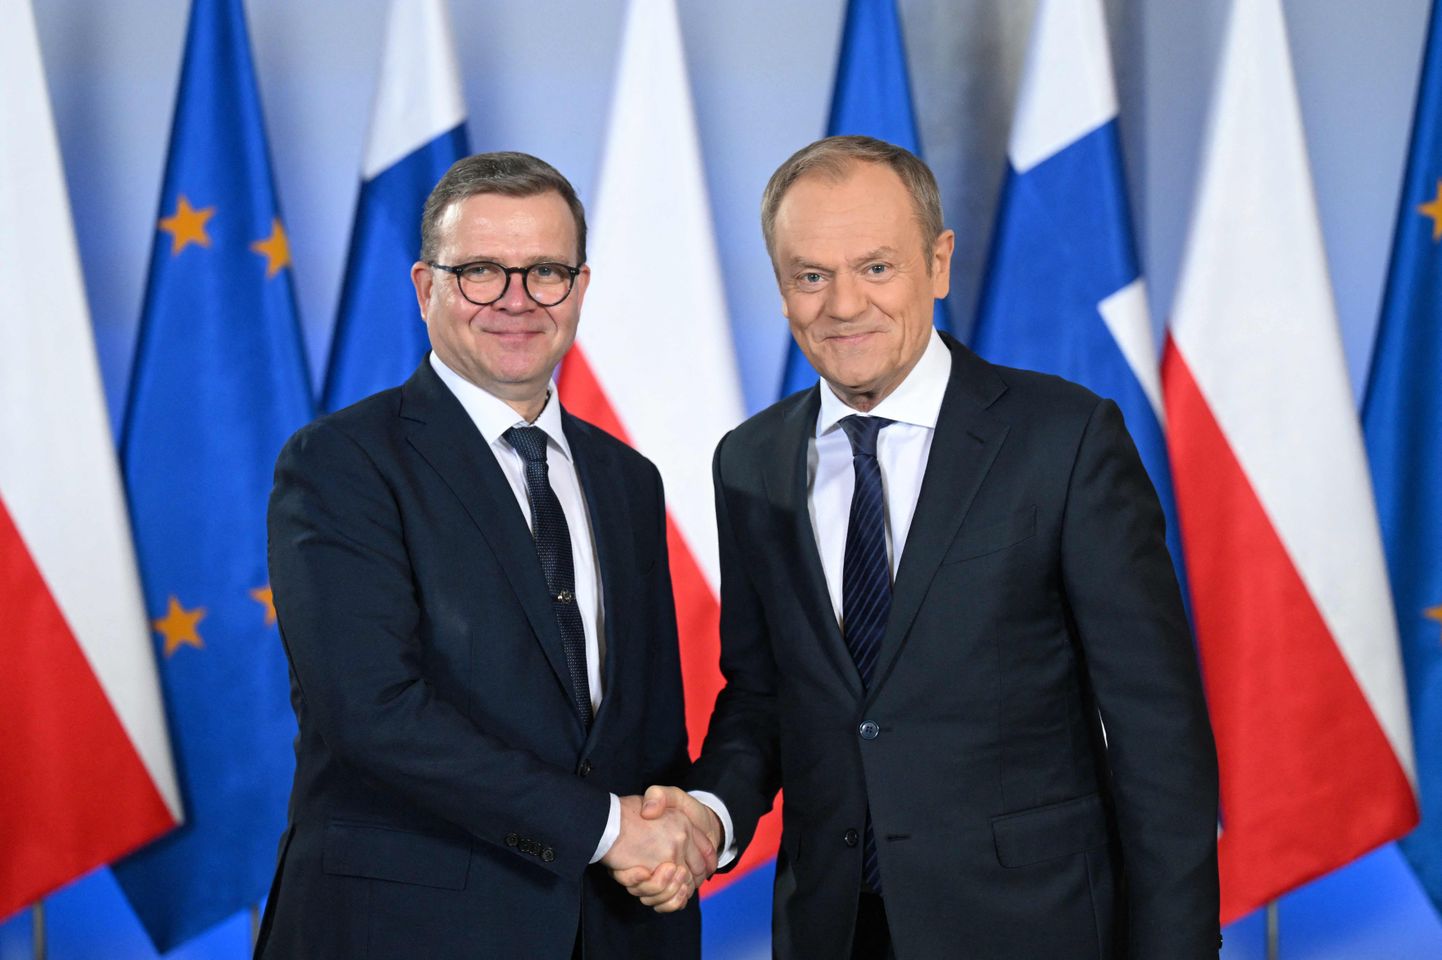 Polijas premjers Donalds Tusks un Somijas valdības vadītājs Peteri Orpo